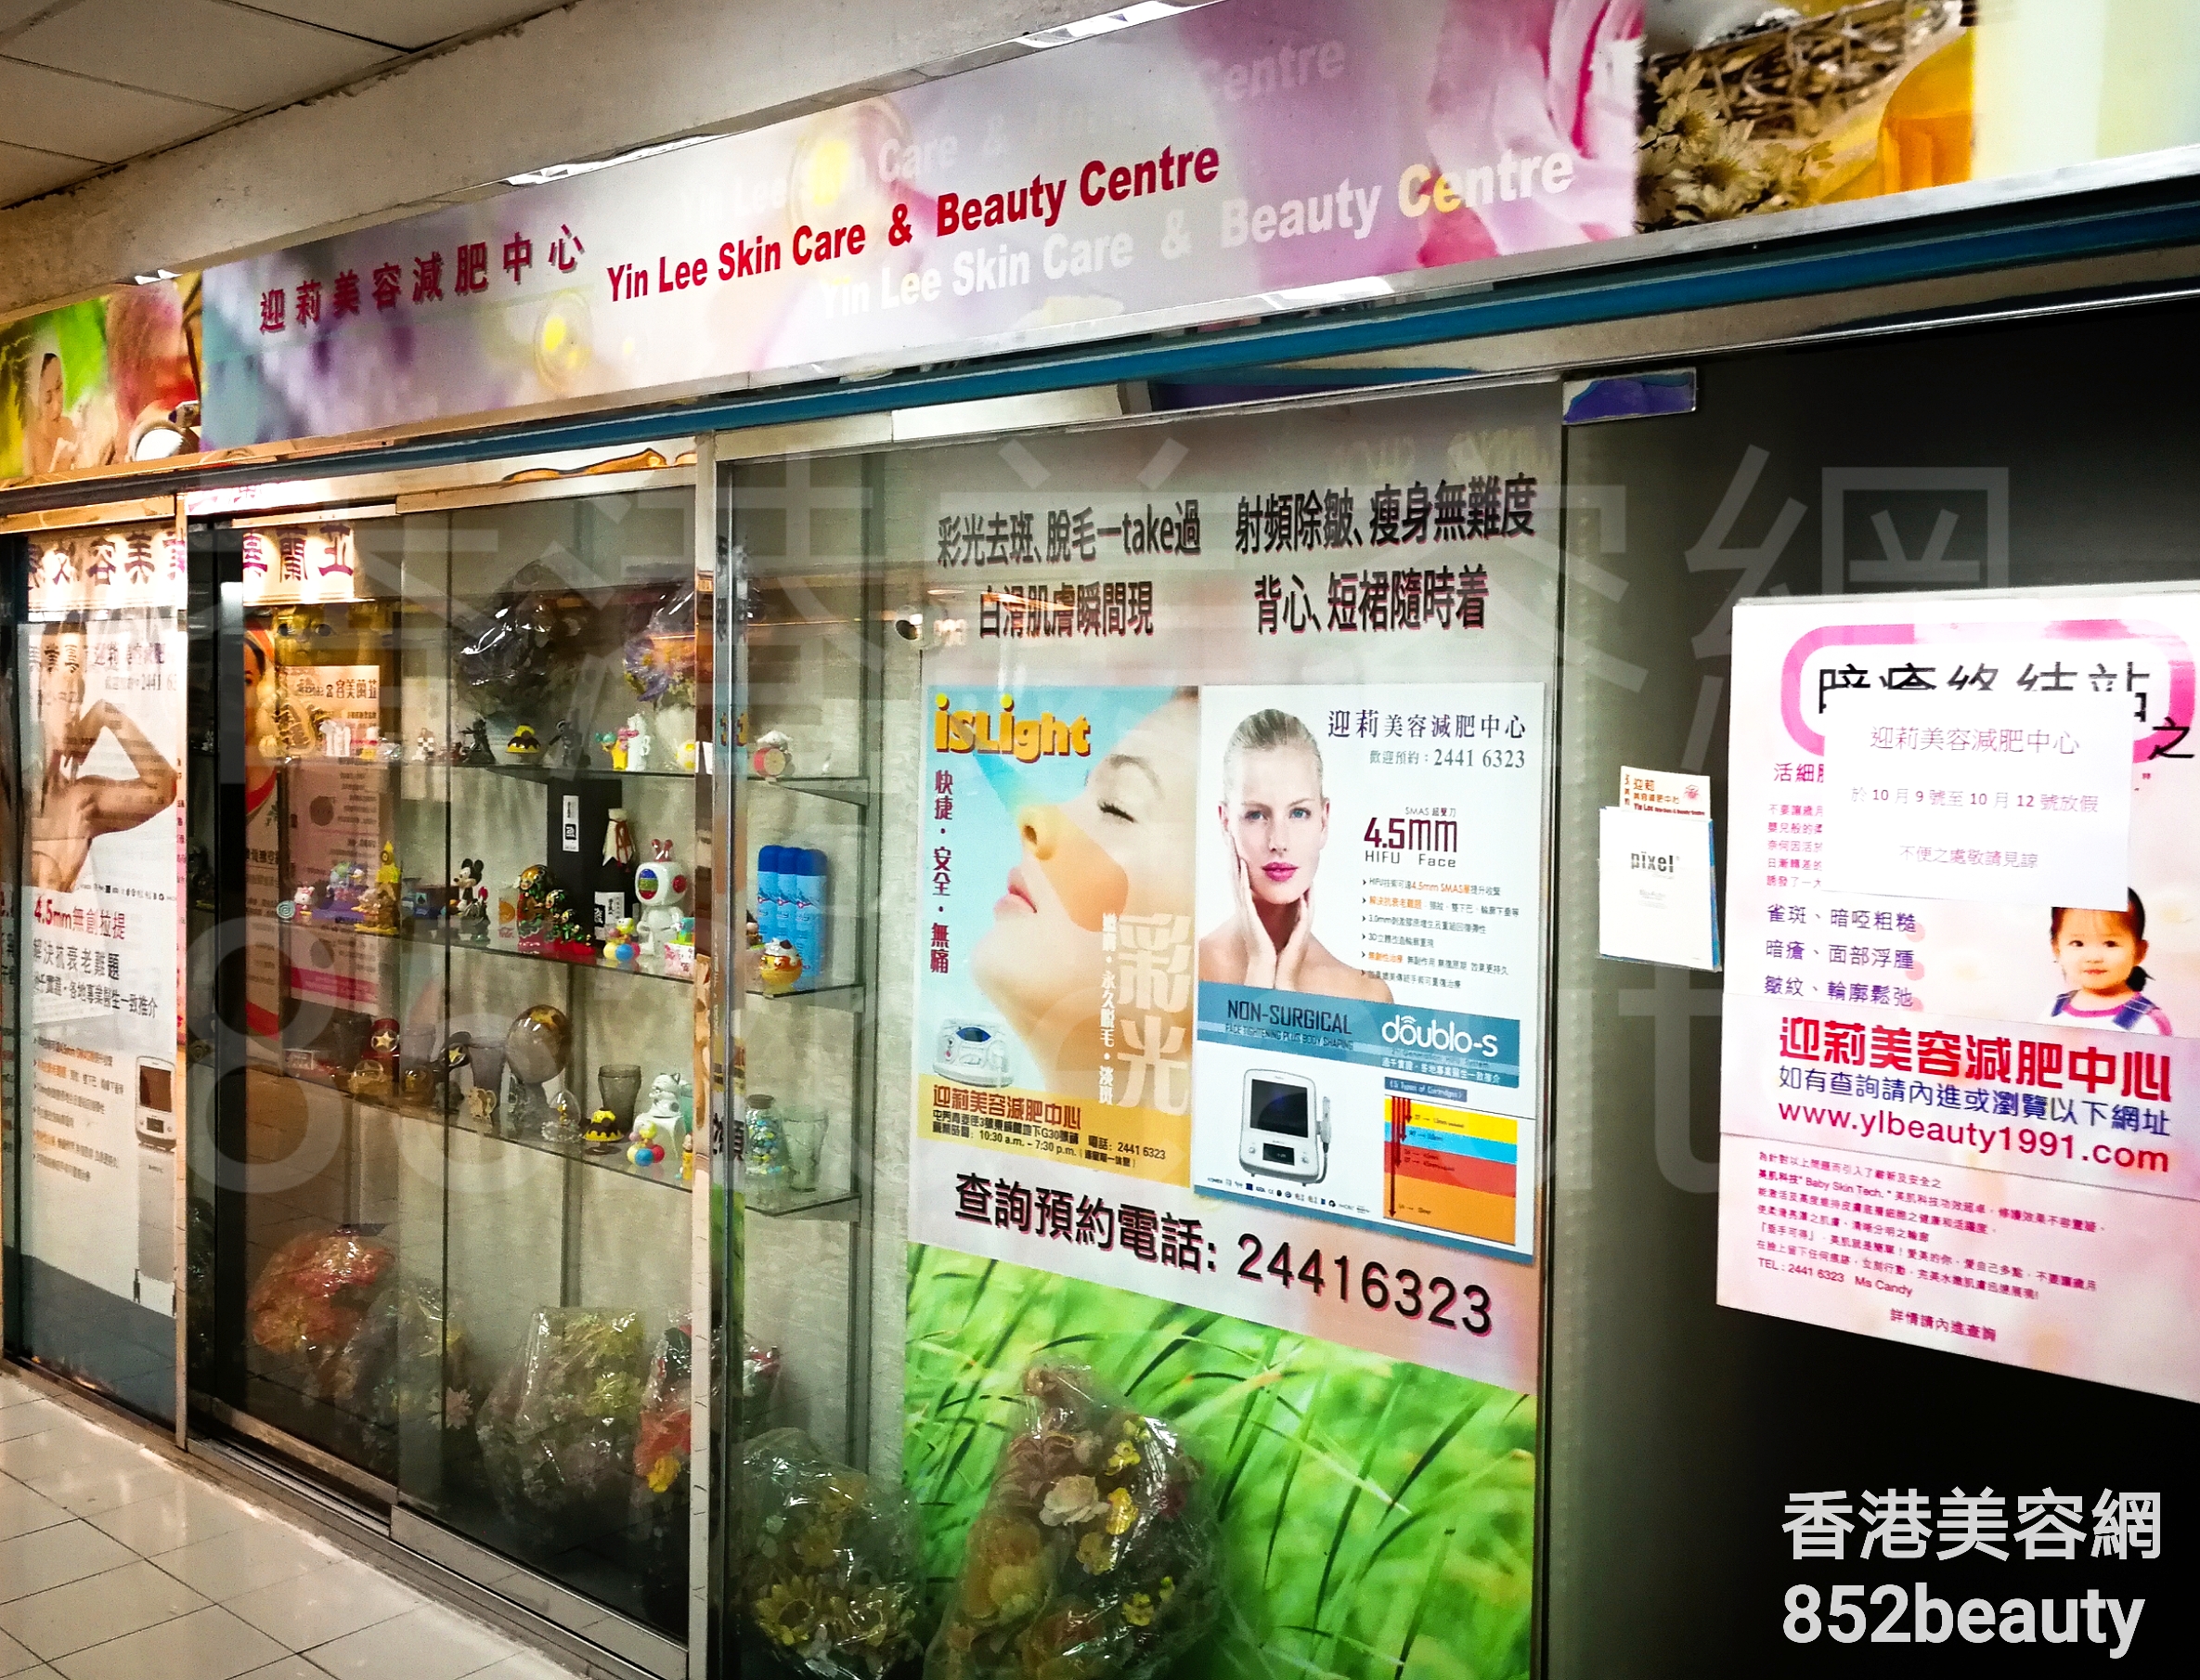 香港美容網 Hong Kong Beauty Salon 美容院 / 美容師: 迎莉美容減肥中心